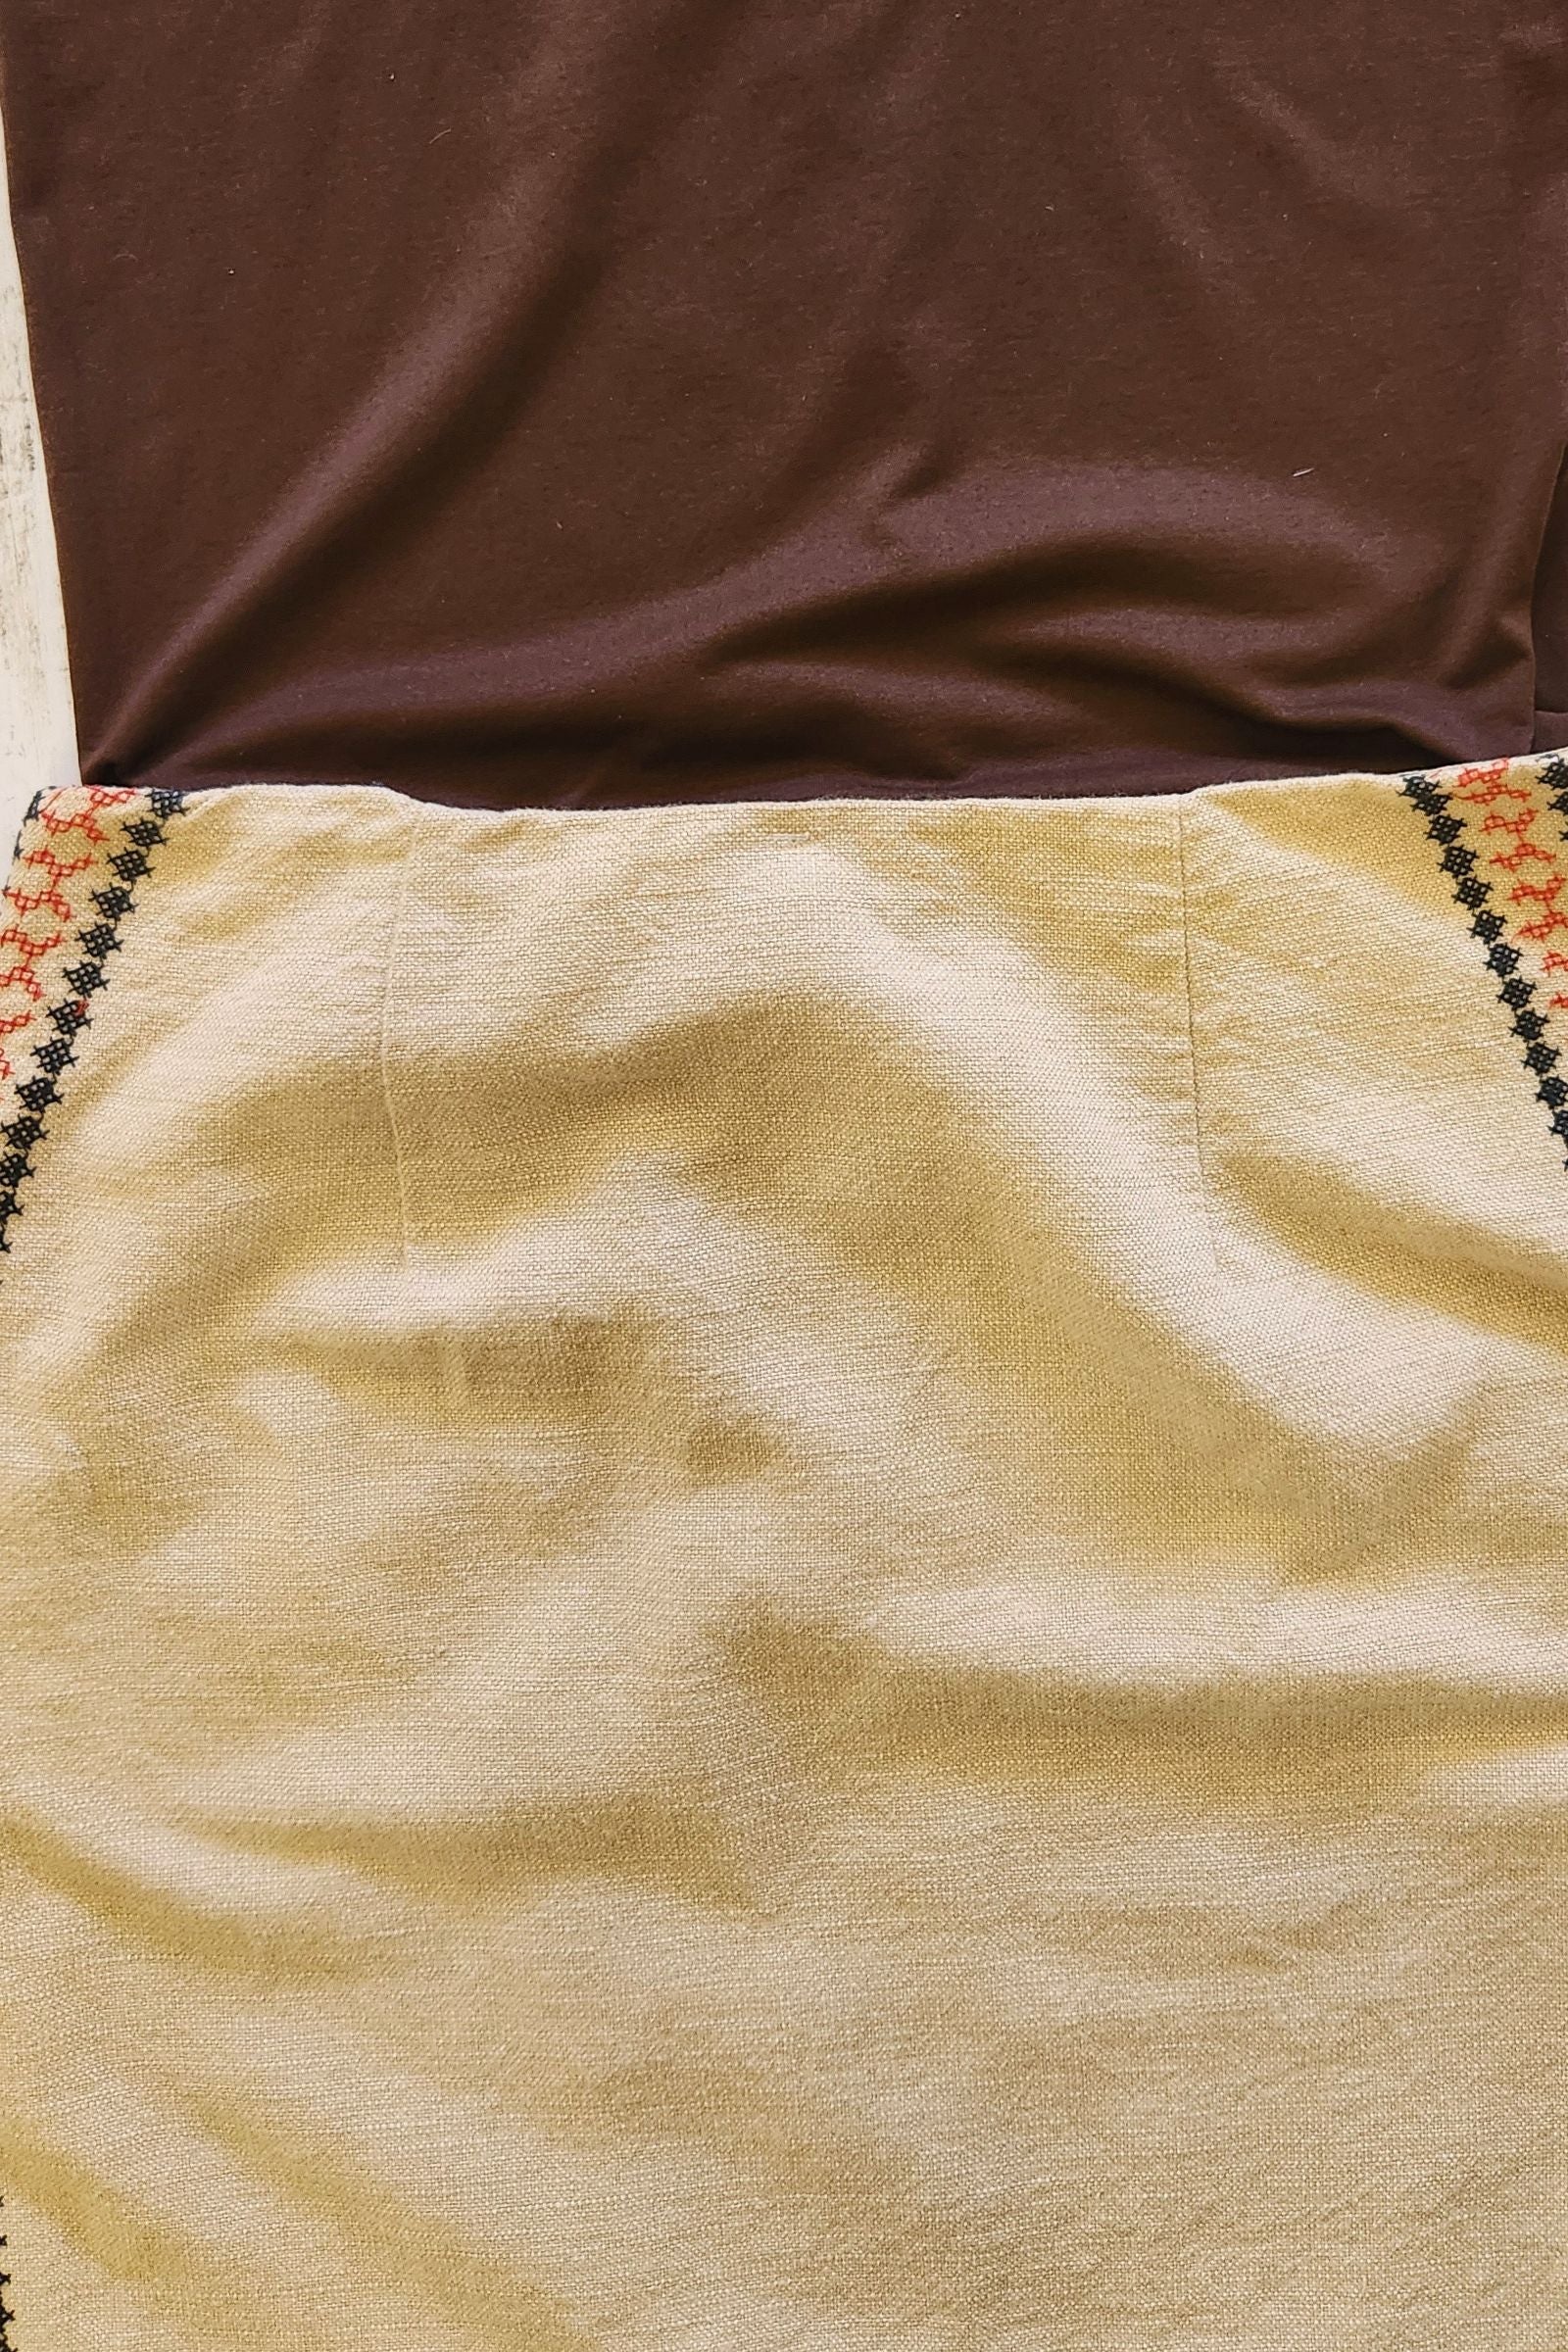 Vintage Loft Skirt